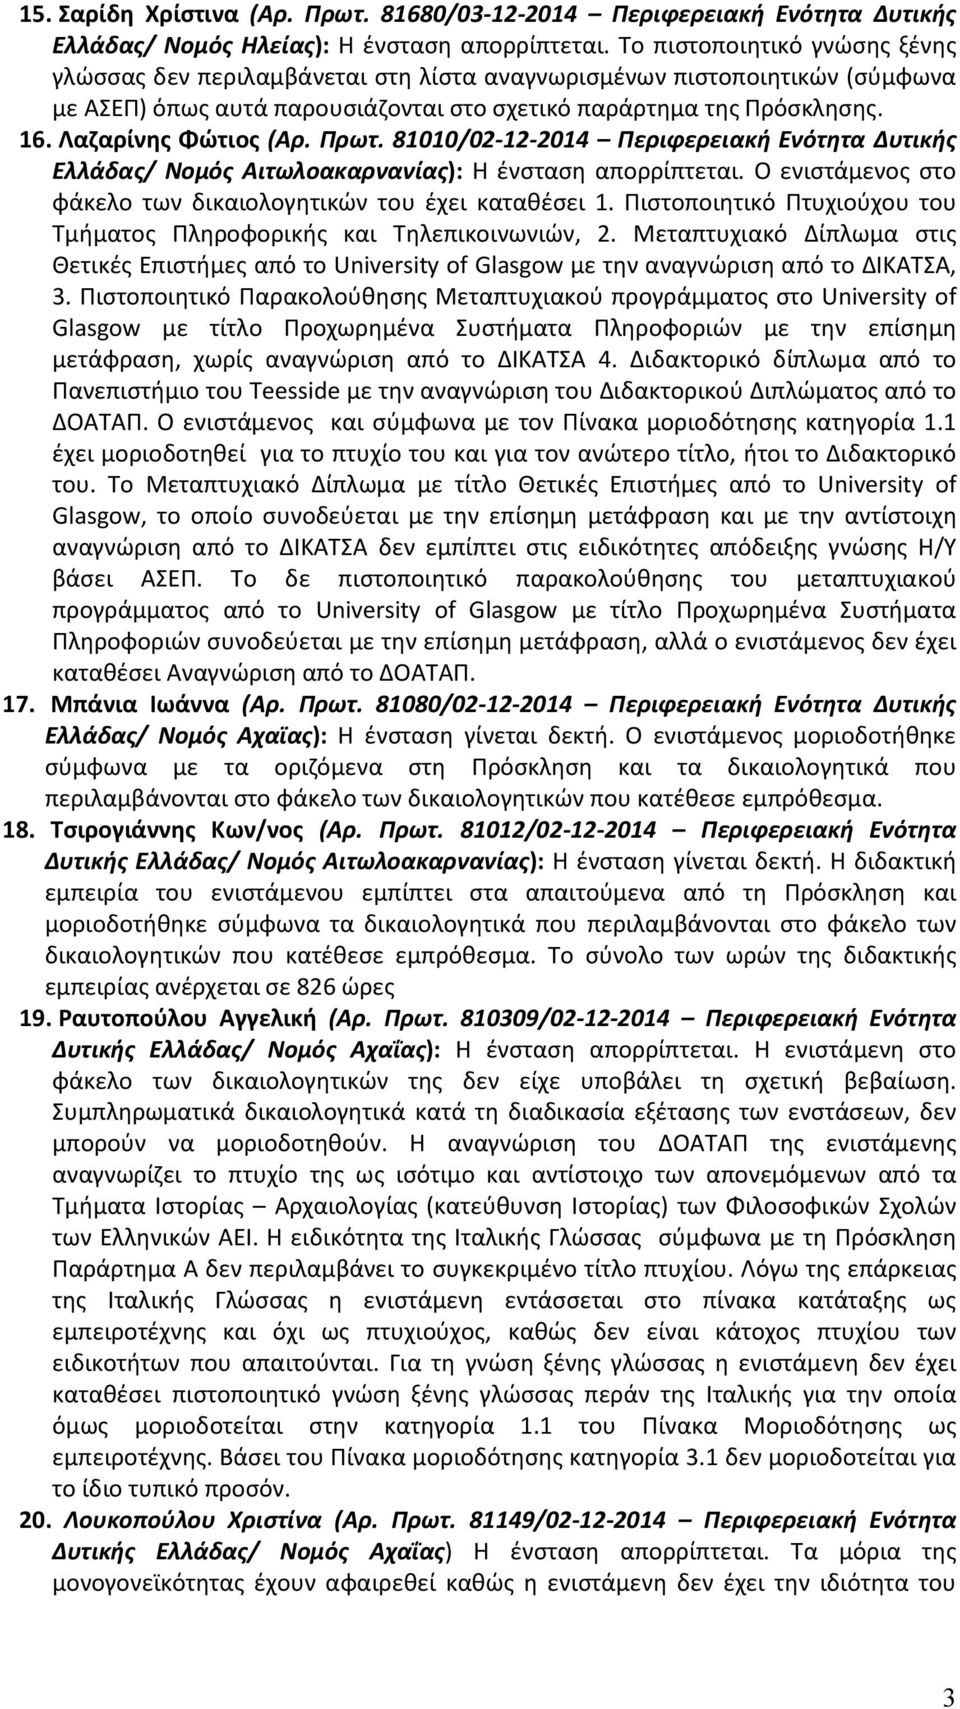 Λαζαρίνης Φώτιος (Αρ. Πρωτ. 81010/02-12-2014 Περιφερειακή Ενότητα Δυτικής Ελλάδας/ Νομός Αιτωλοακαρνανίας): Η ένσταση απορρίπτεται. Ο ενιστάμενος στο φάκελο των δικαιολογητικών του έχει καταθέσει 1.